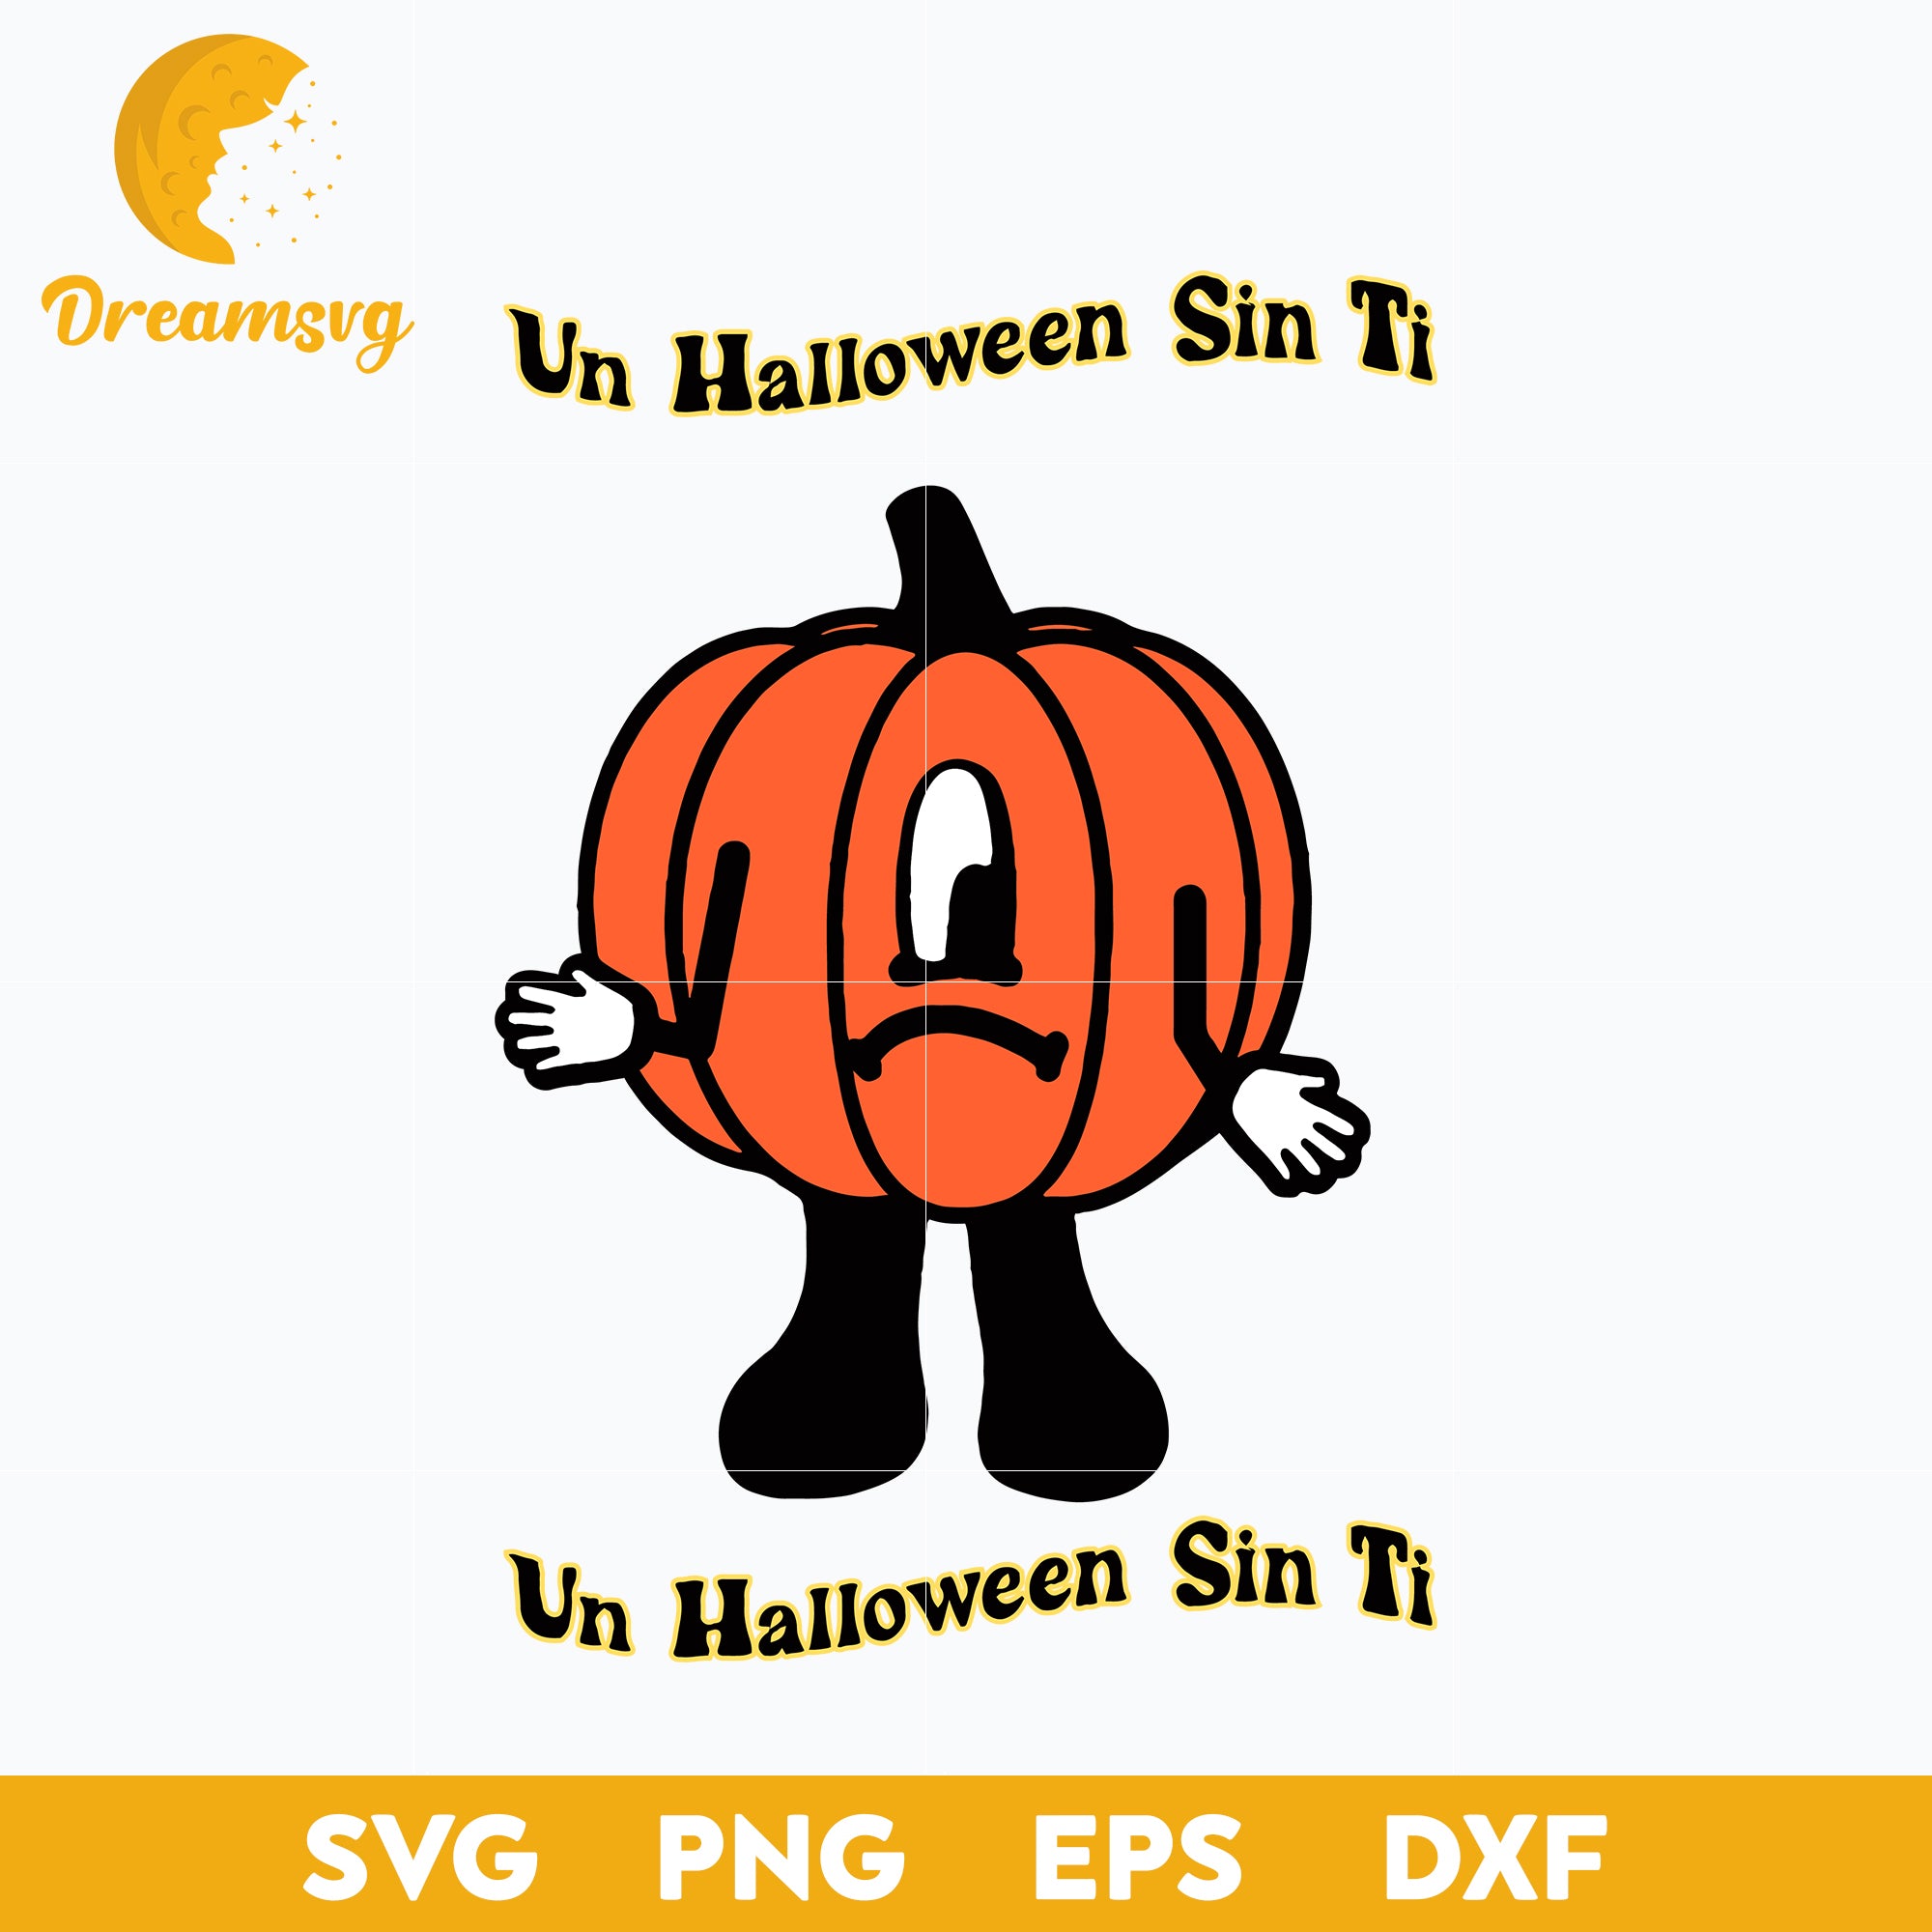 Un Verano sin Ti Halloween Svg, Un verano sin ti Svg, png, dxf, eps digital file